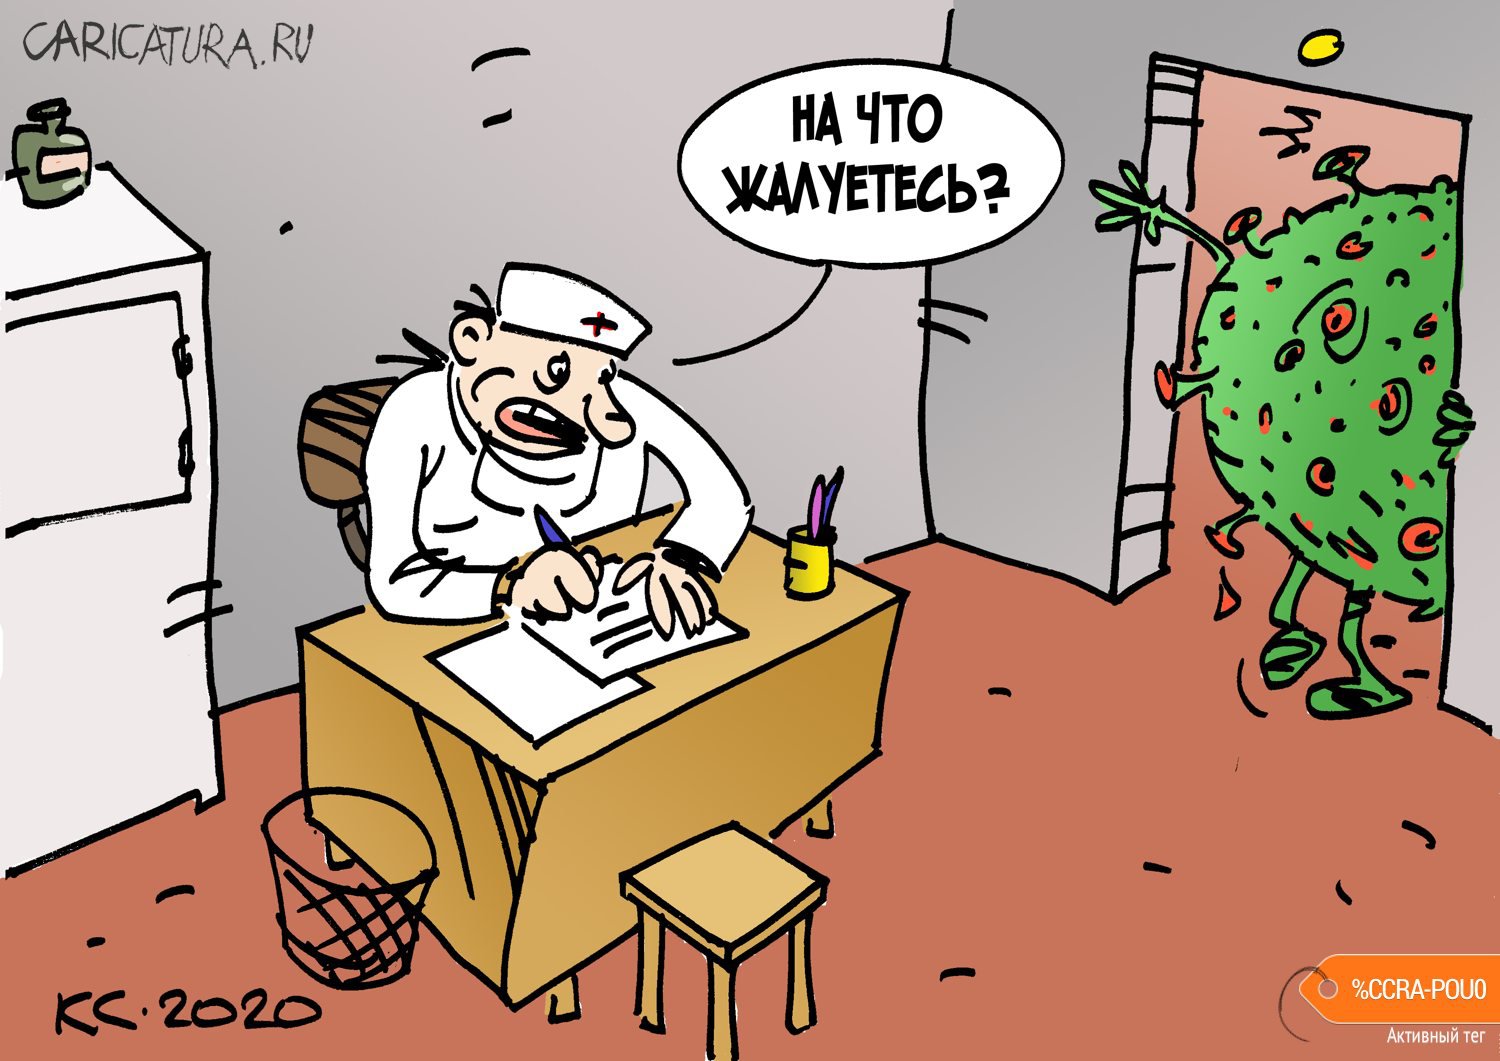 Карикатура "На что жалуетесь?", Вячеслав Капрельянц